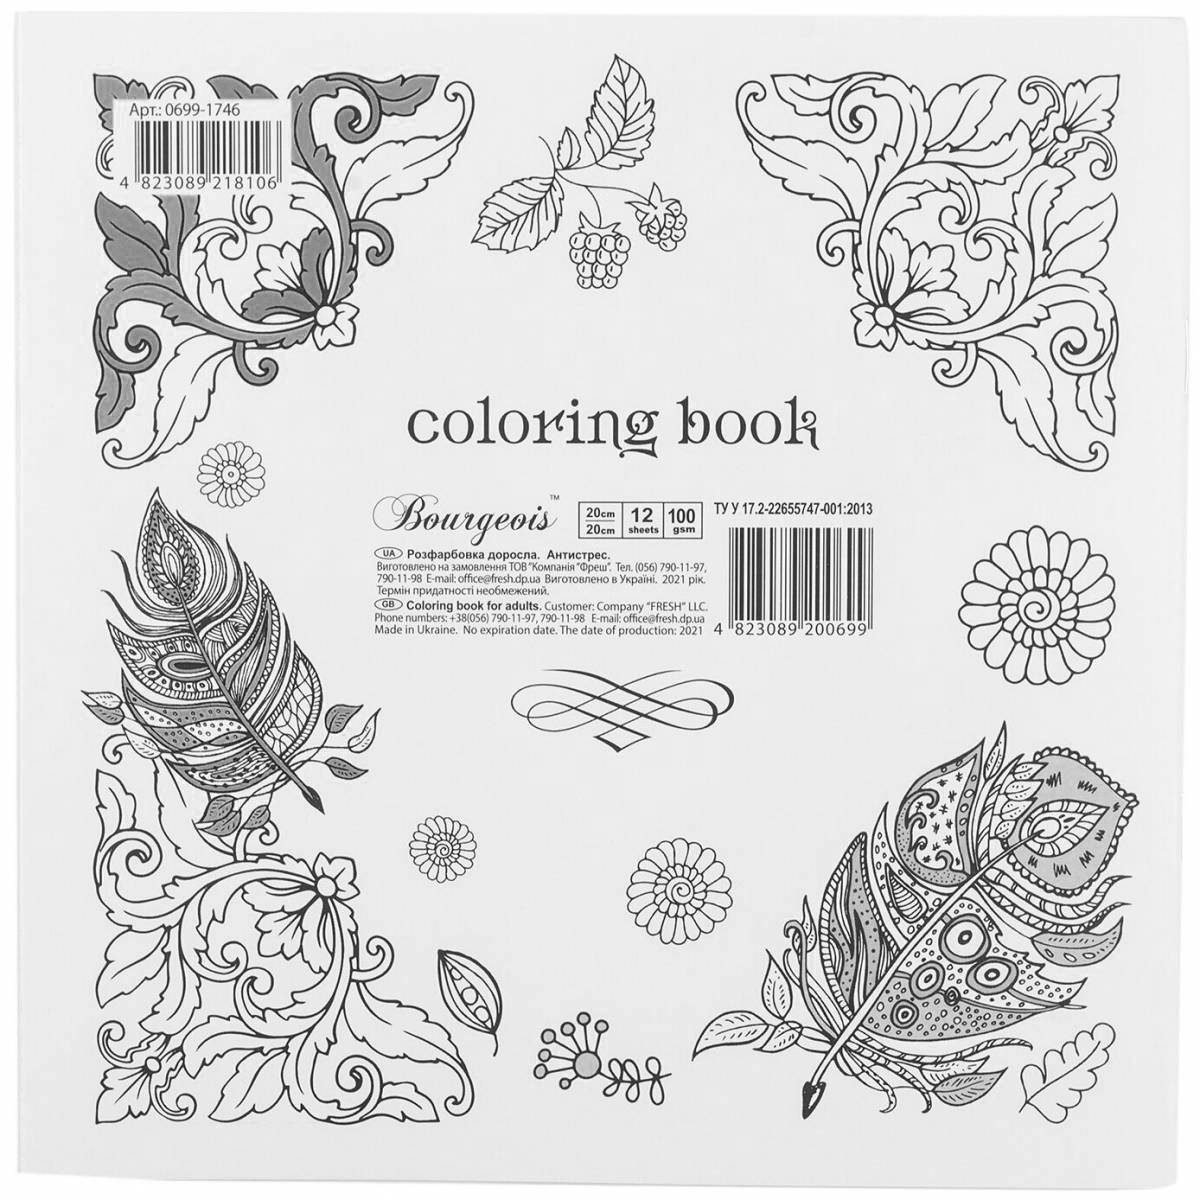 Fun anti-stress coloring book